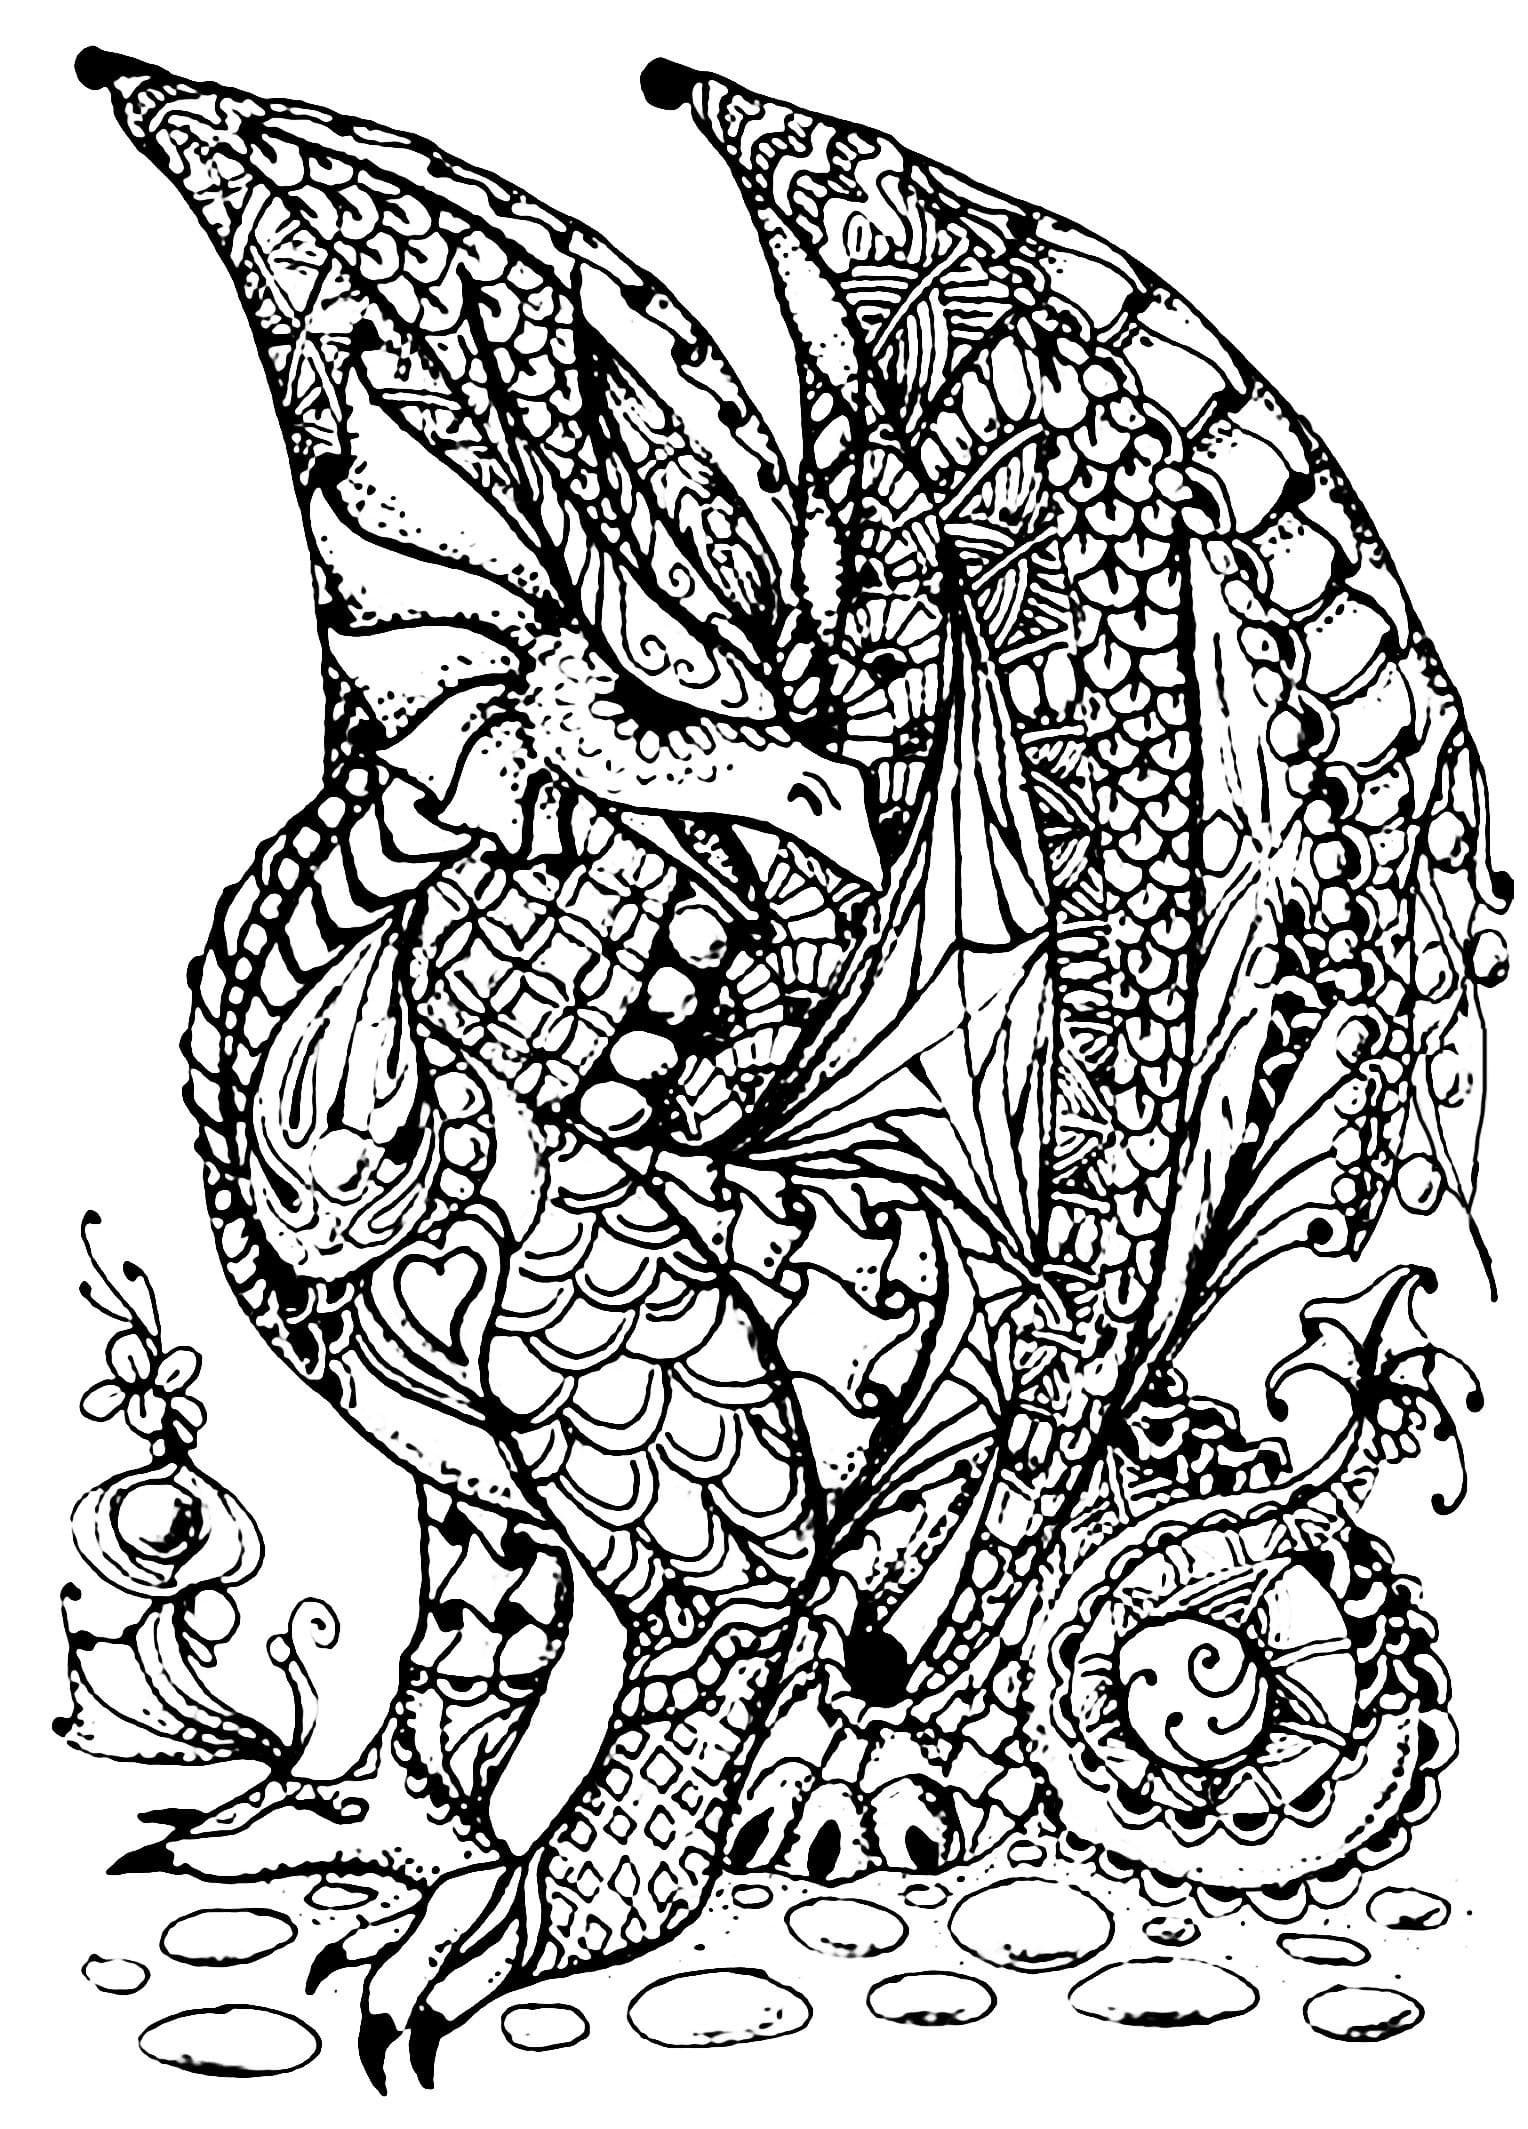 Dibujos de Dungeons and Dragons para Colorear y Imprimir gratis